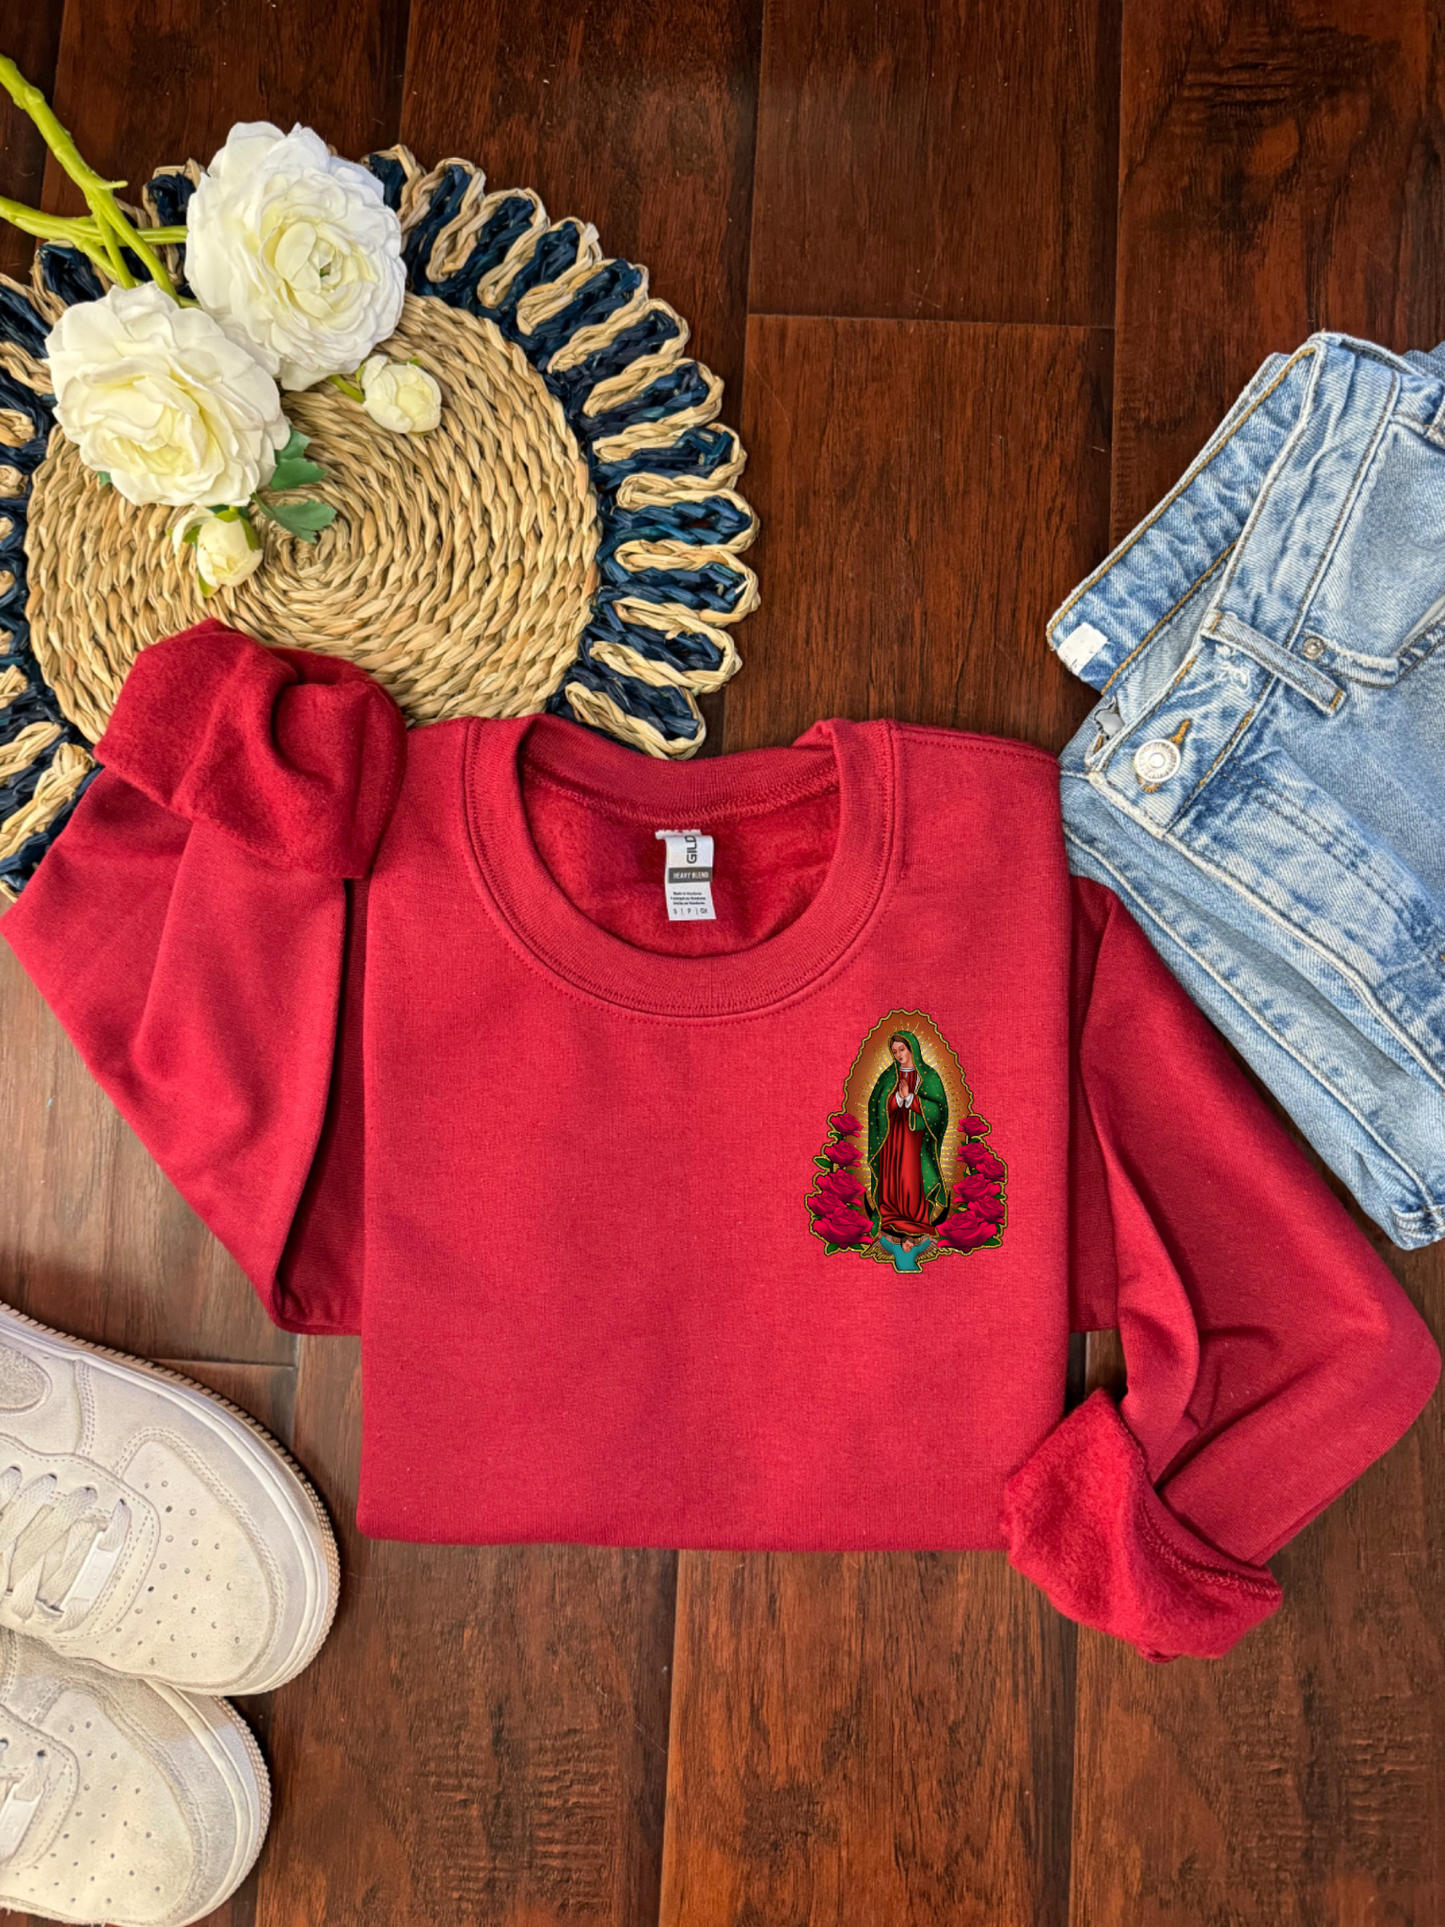 Virgencita sweater